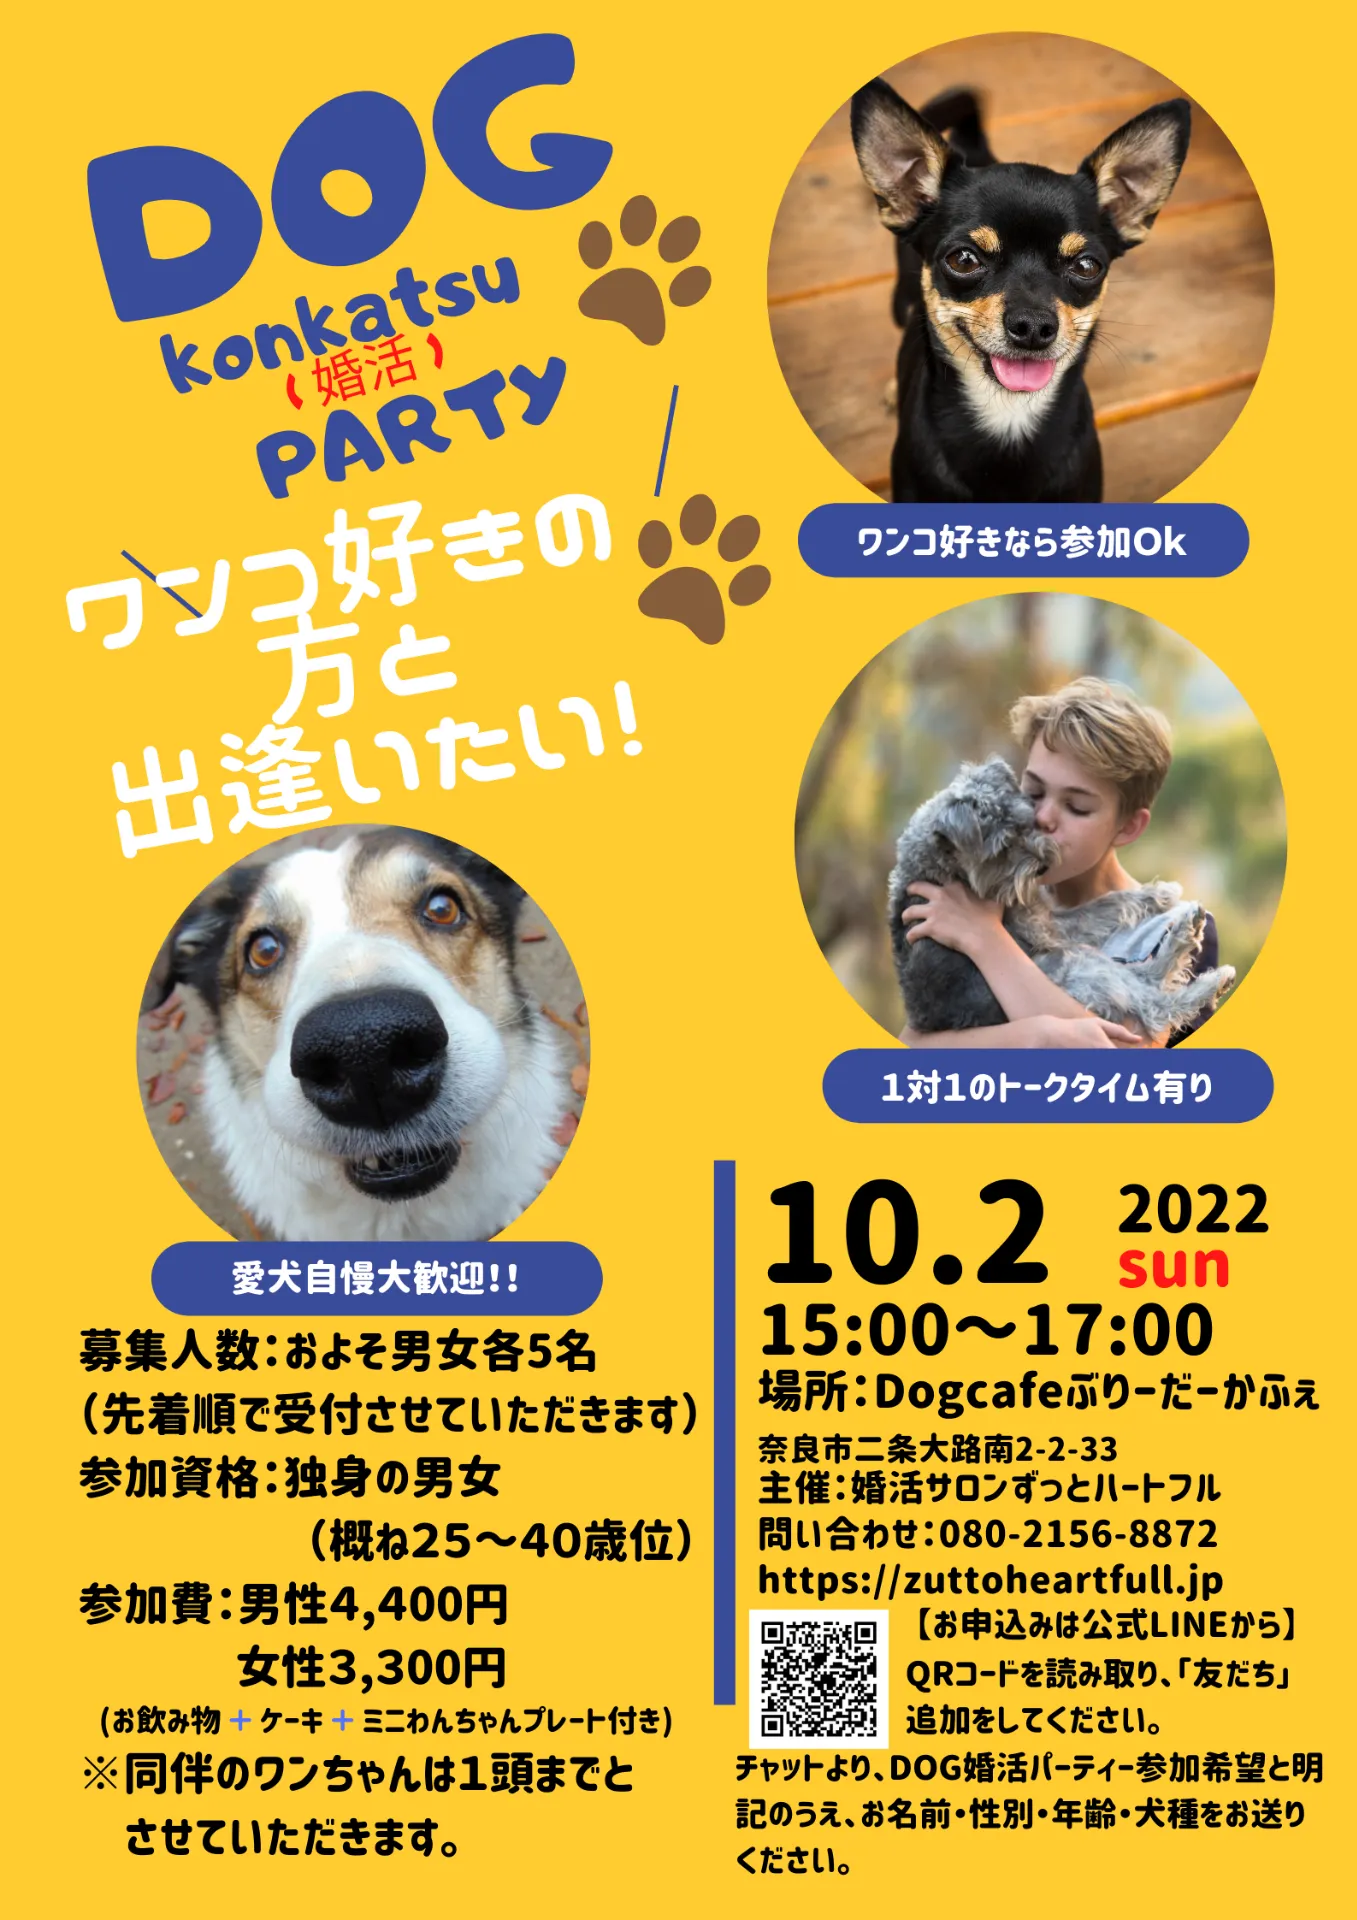 奈良でワンコン、犬好きさんのワンコ婚活パーティー開催します